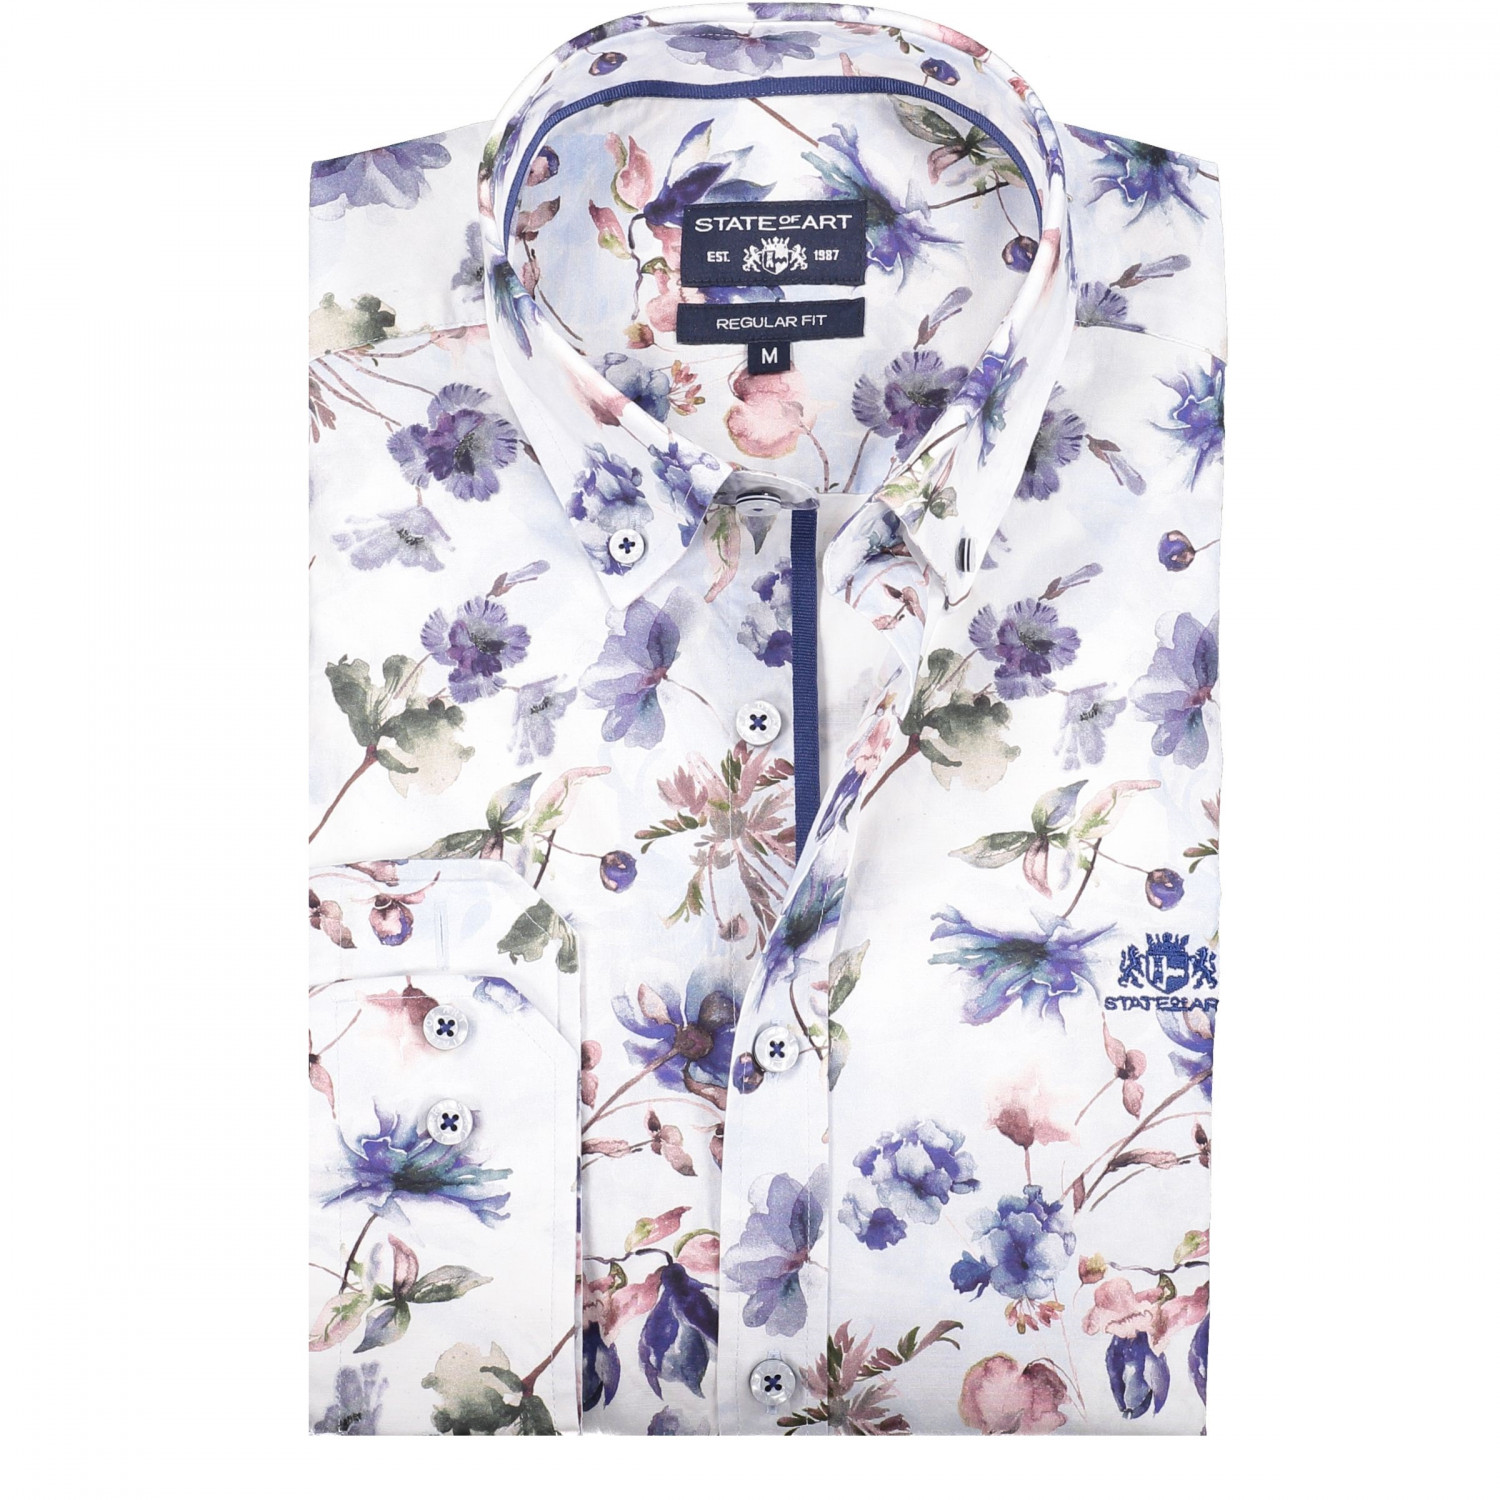 voordelig Resultaat James Dyson State of Art Regular fit overhemd met bloemen - J Style Menswear